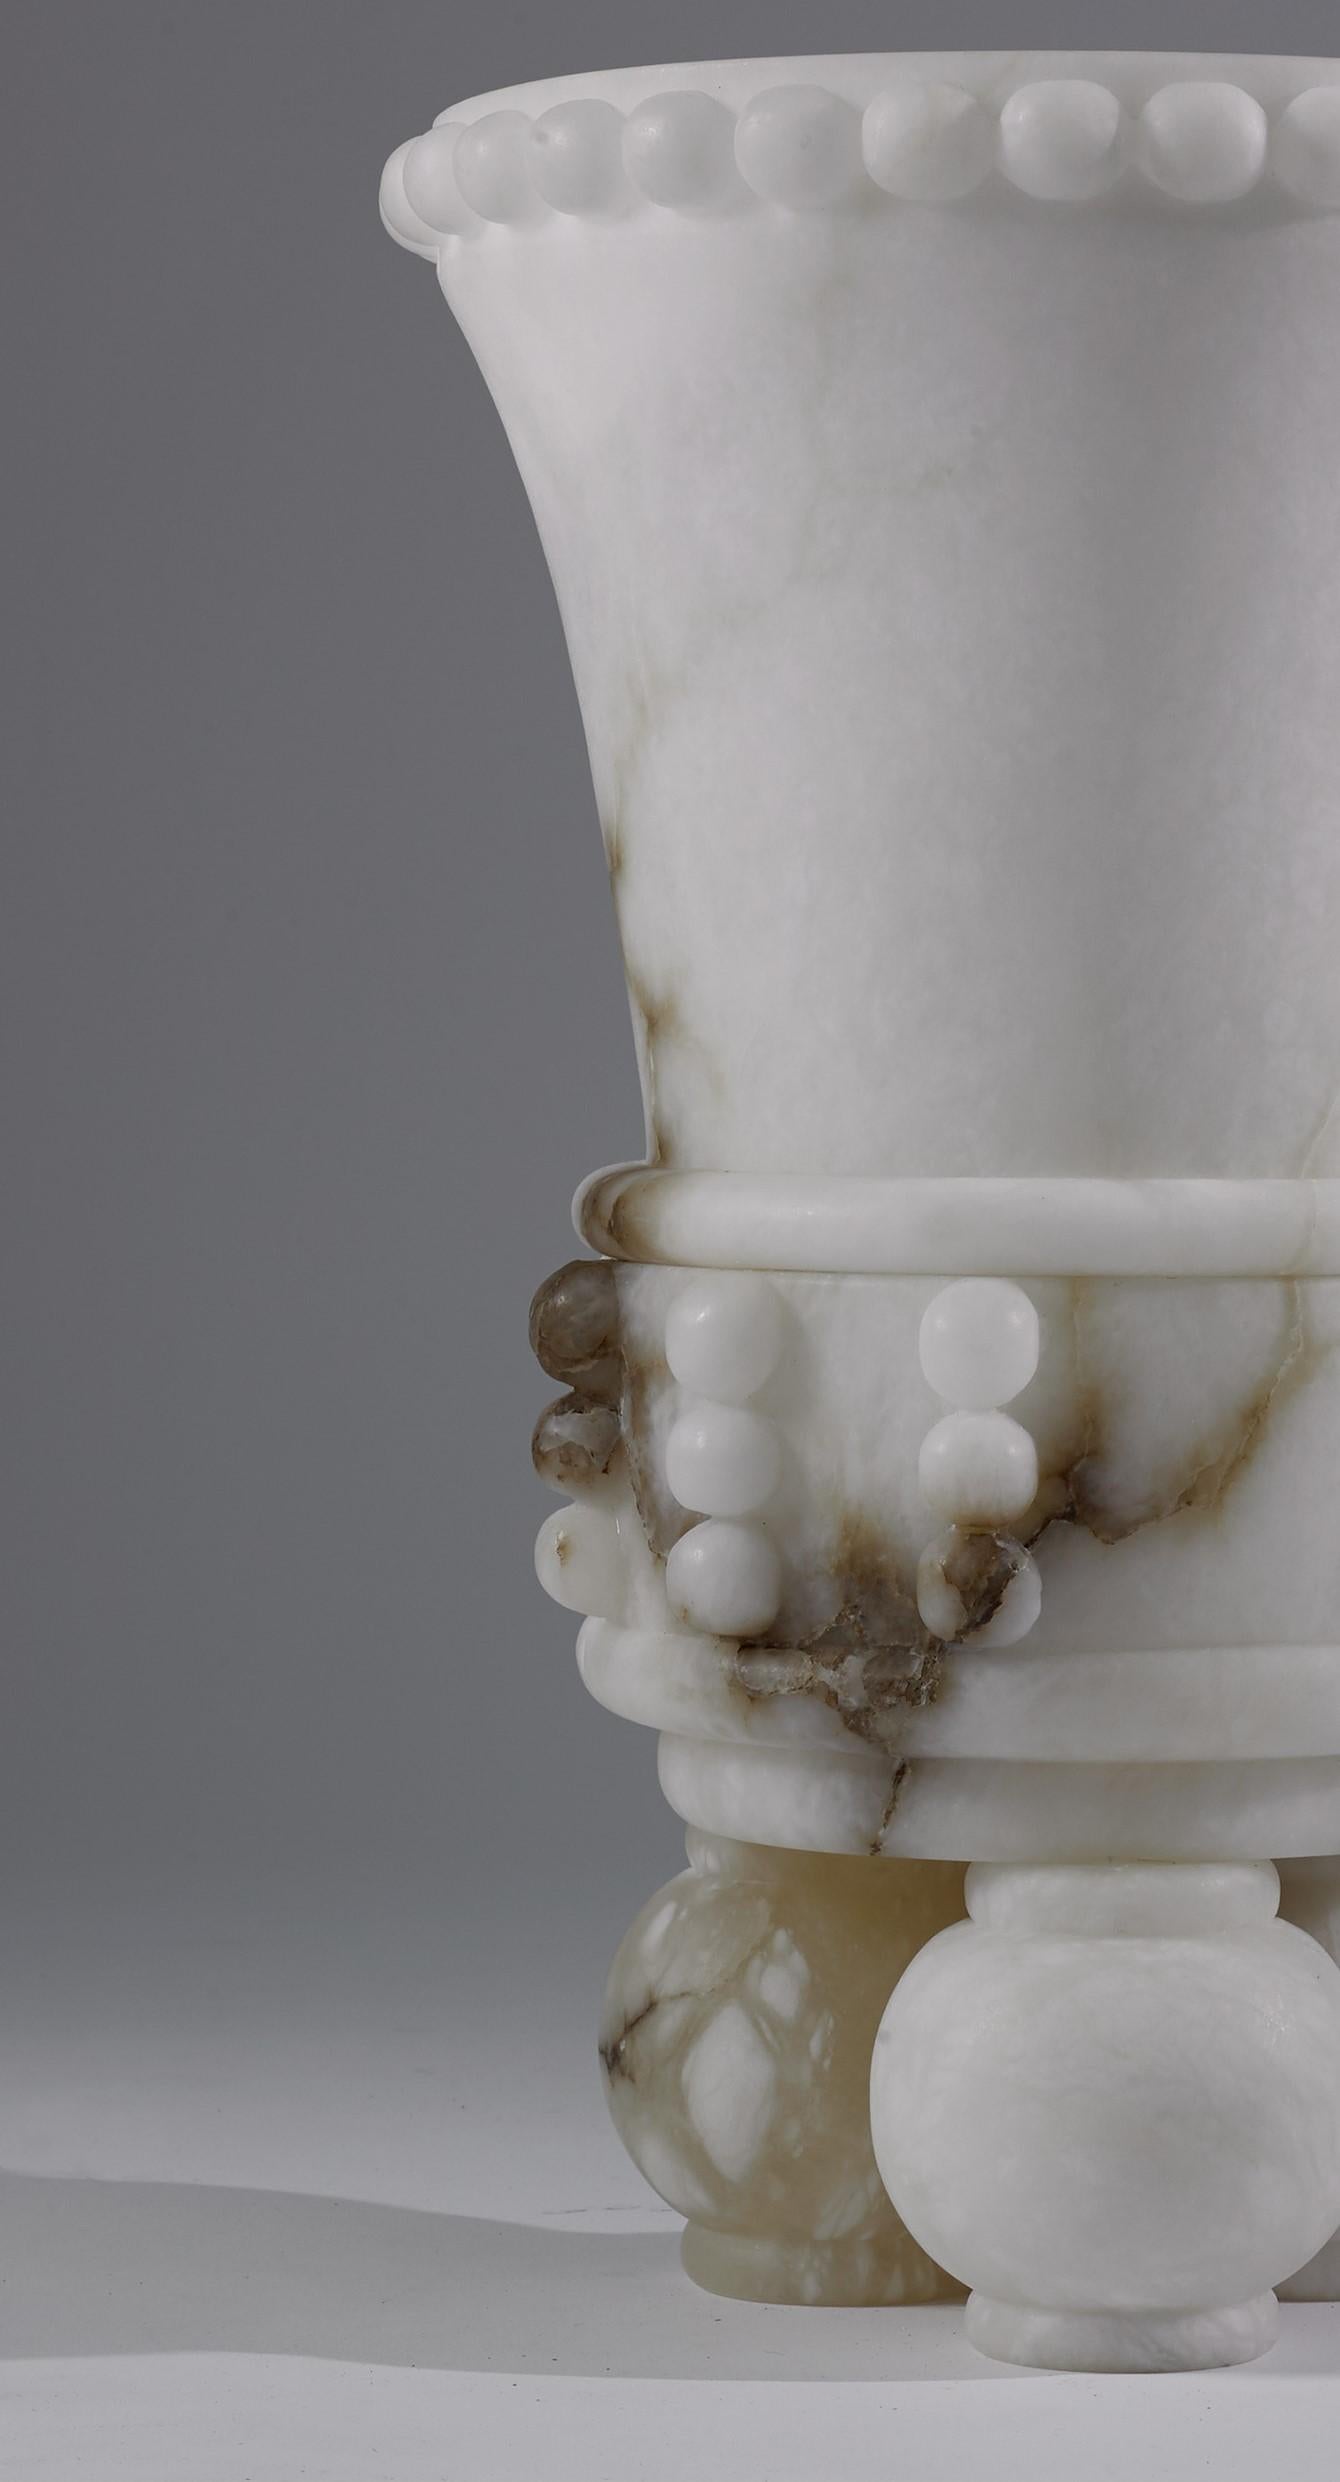 Très impressionnant grand récipient sculpté dans l'albâtre le plus pur trouvé en Italie, inspiré des récipients d'argile mayas utilisés lors des cérémonies par cette ancienne civilisation. Une pièce unique qui se présente comme une sculpture du